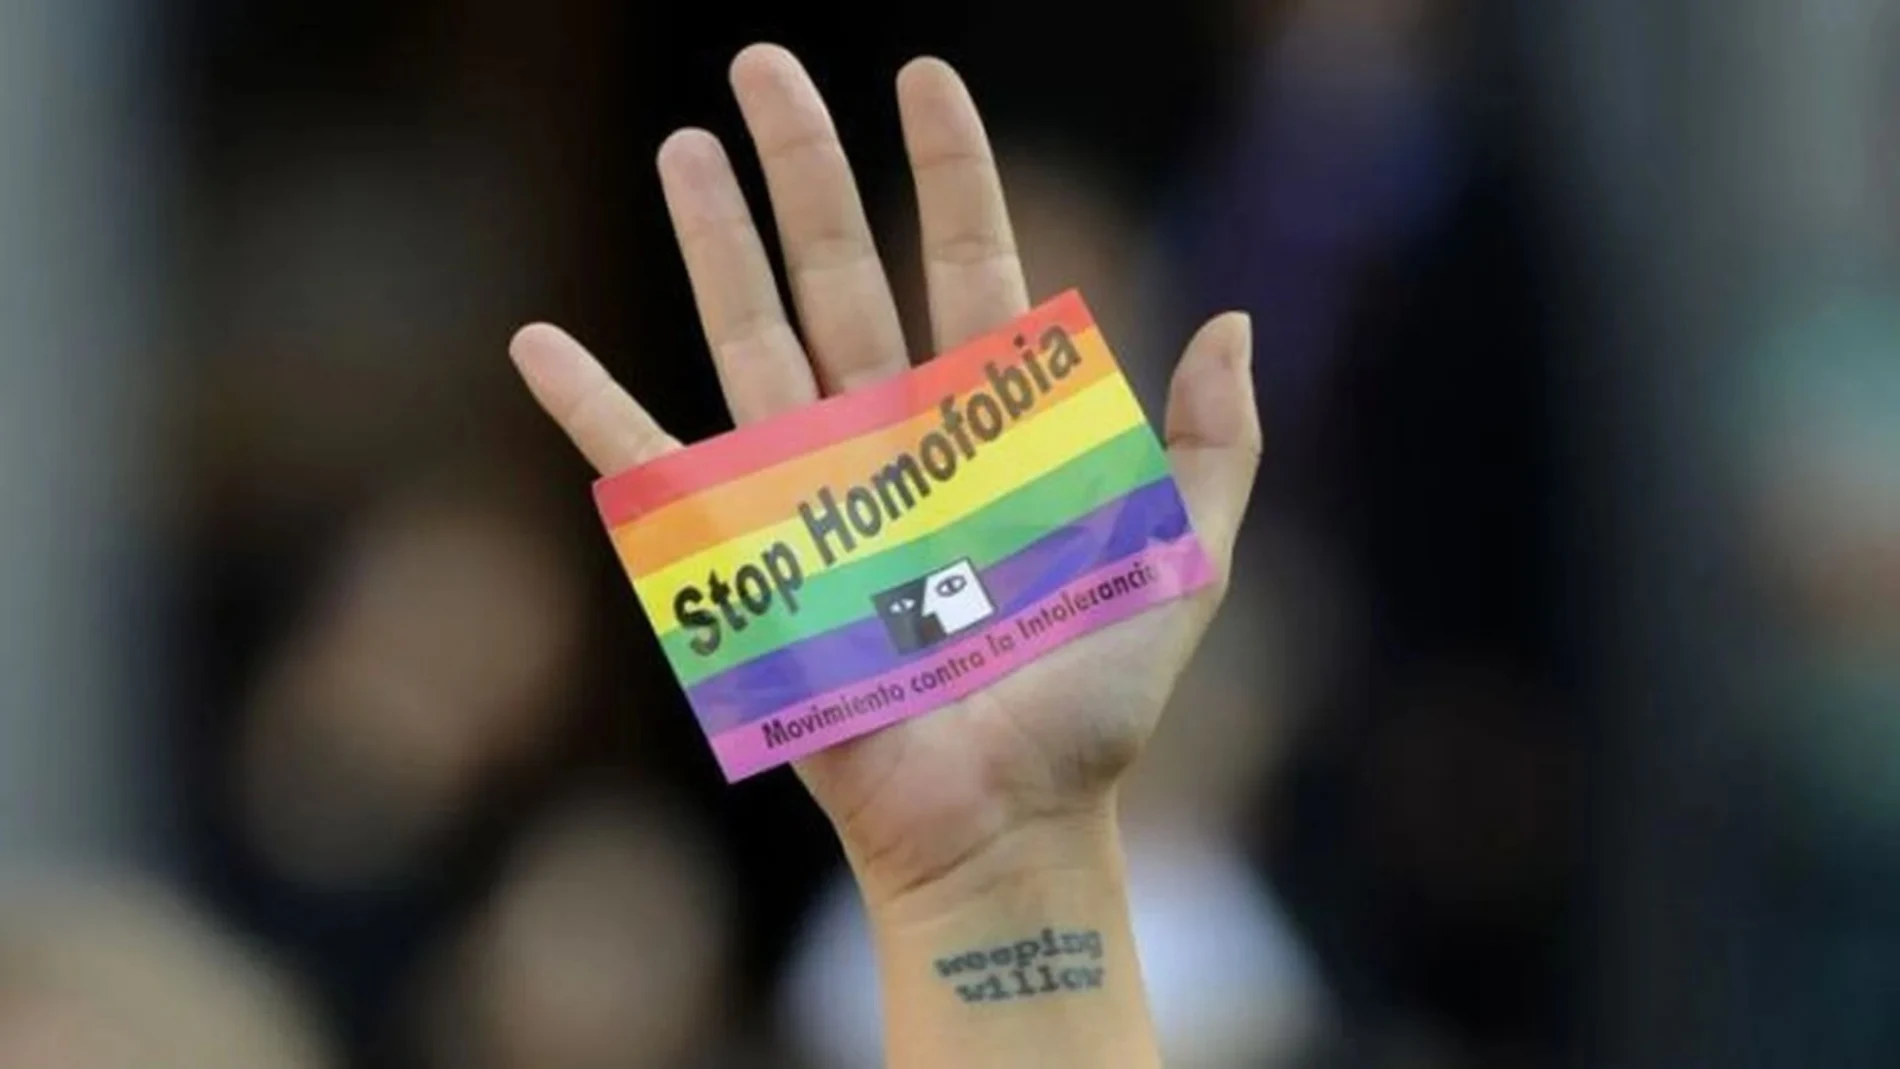 Fundación Triángulo denuncia una agresión homófoba en Valladolid: 2 jóvenes propinaron una &quot;brutal paliza&quot; a otro